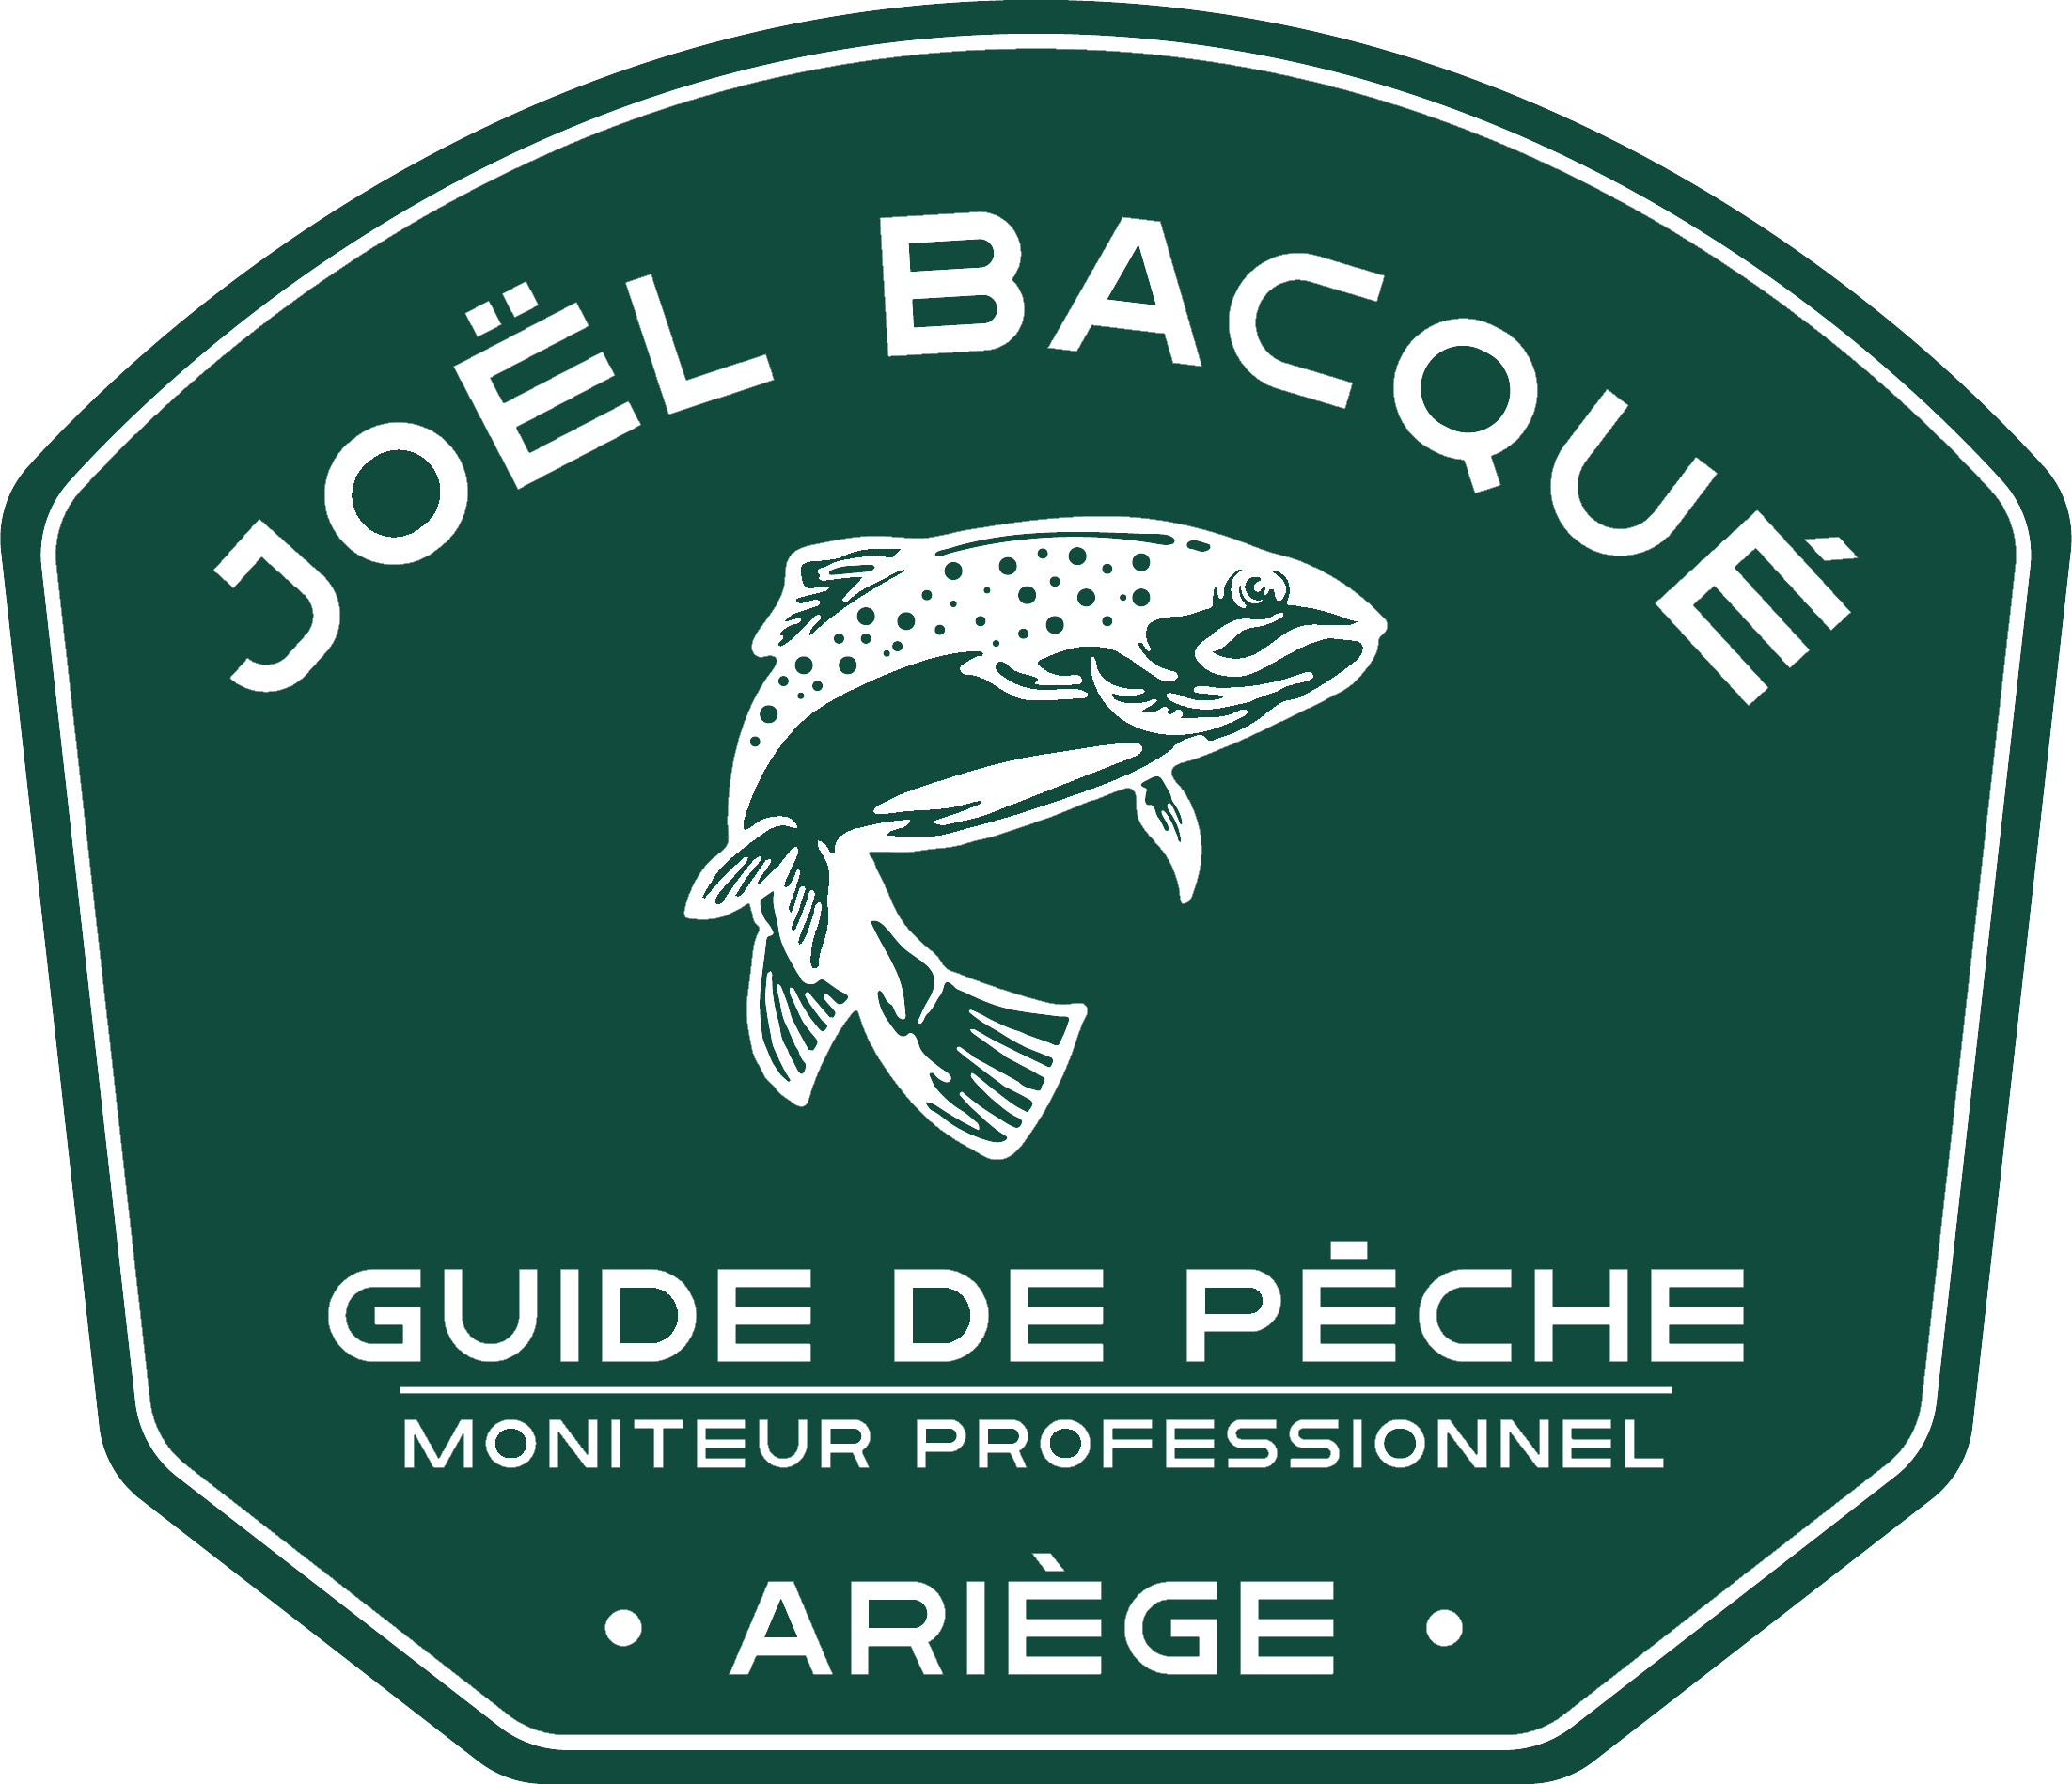 Macaron de Joel Bacque